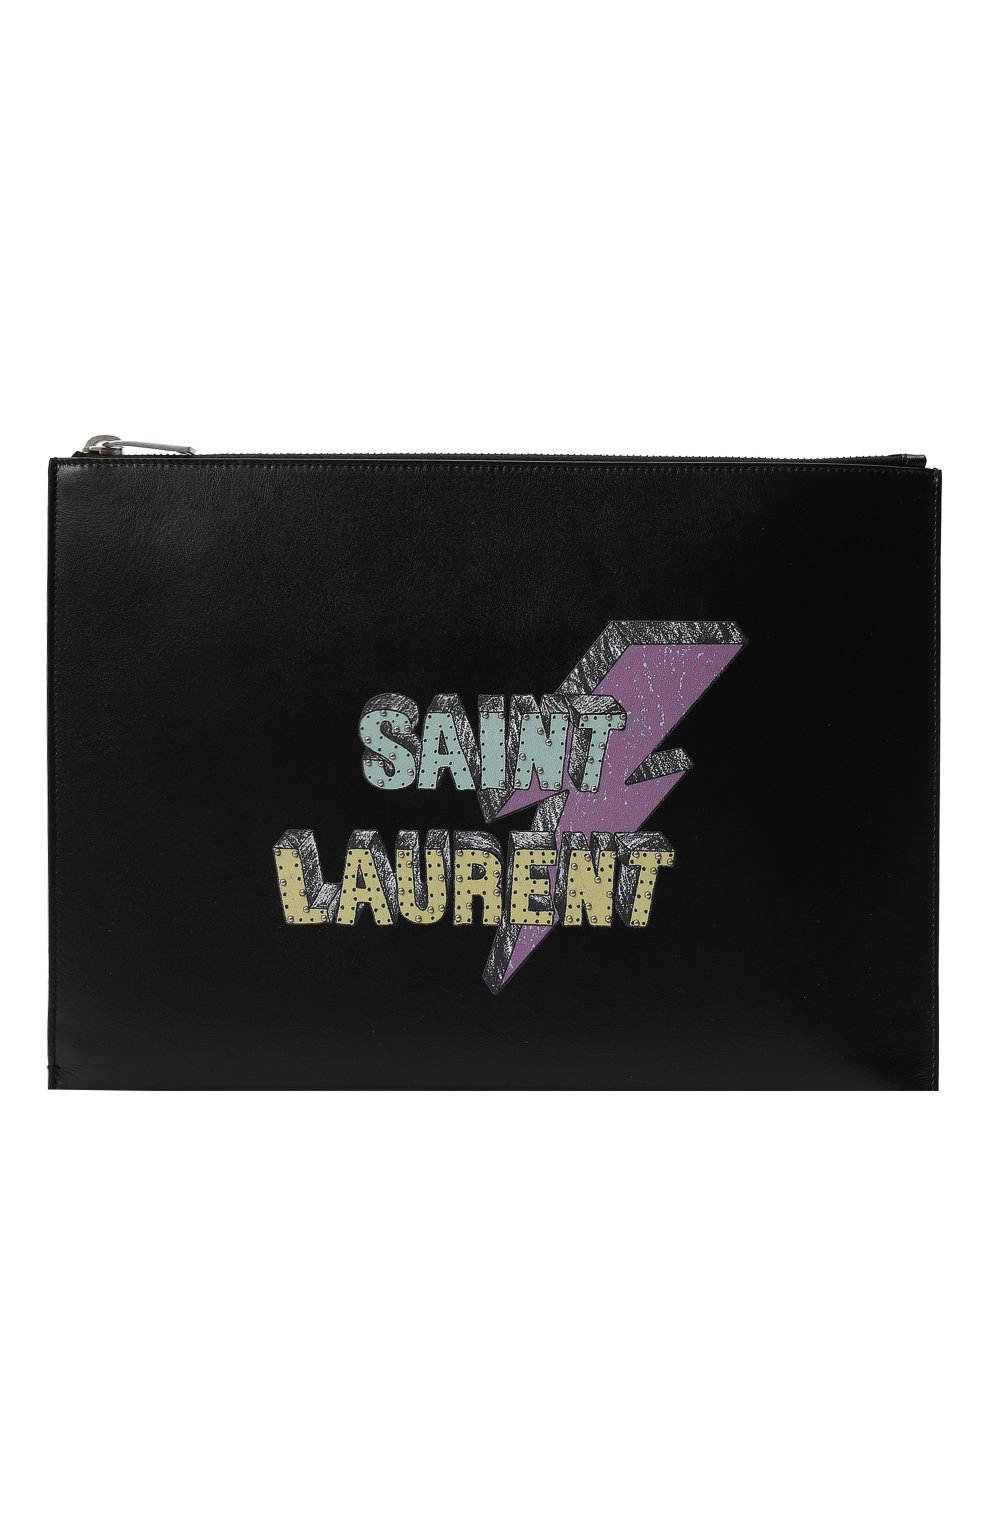 Клатч | Saint Laurent | Чёрный - 1